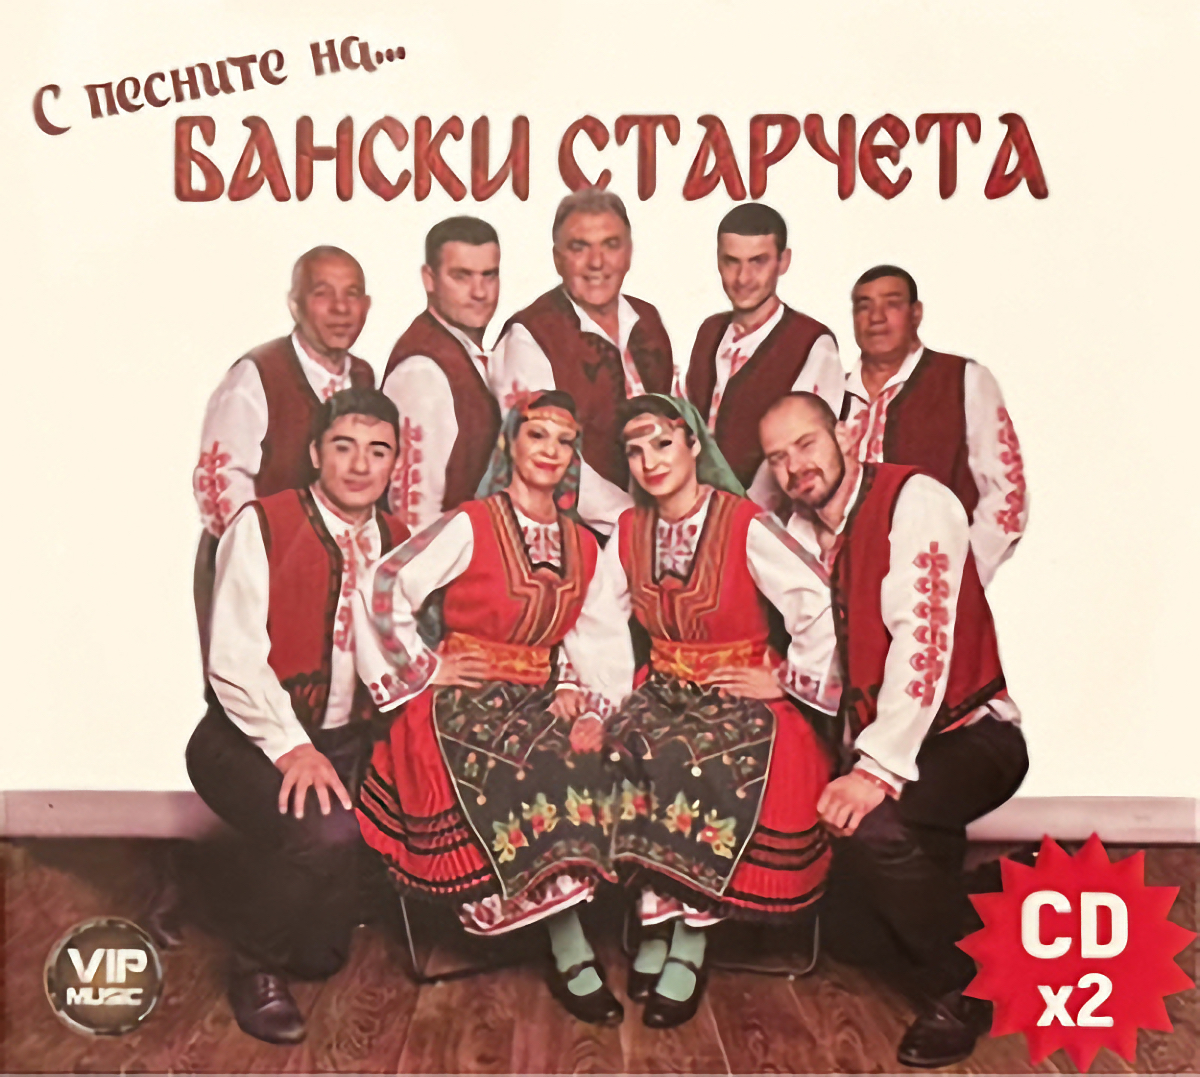 Banski Starcheta CD cover